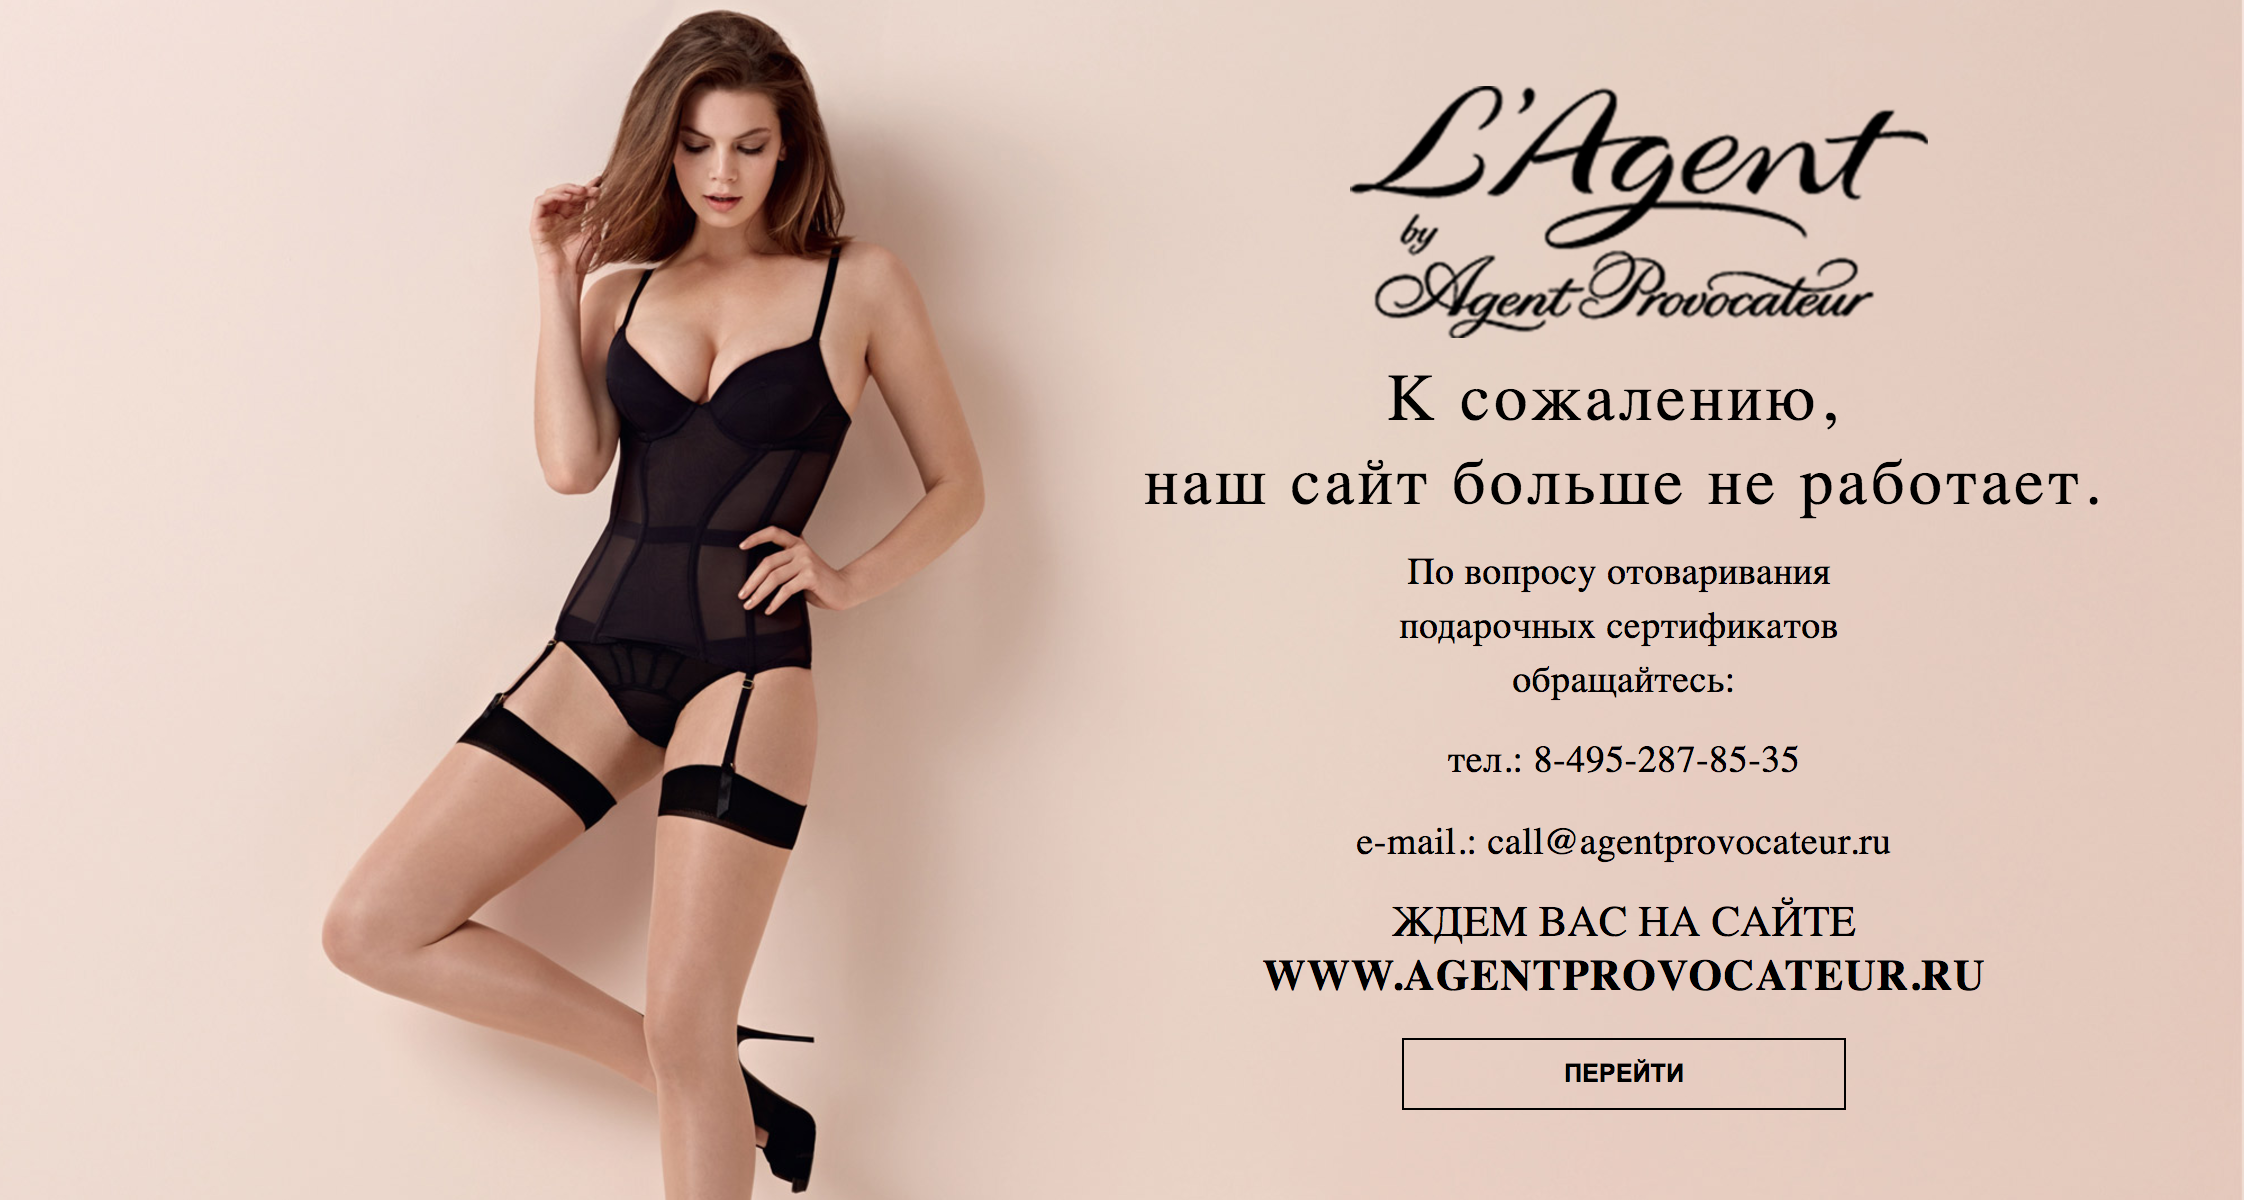 Запущенный для России весной 2016 года интернет-магазин британского бренда нижнего белья L'Agent by Agent Provocateur, на днях прекратил свою работу. 